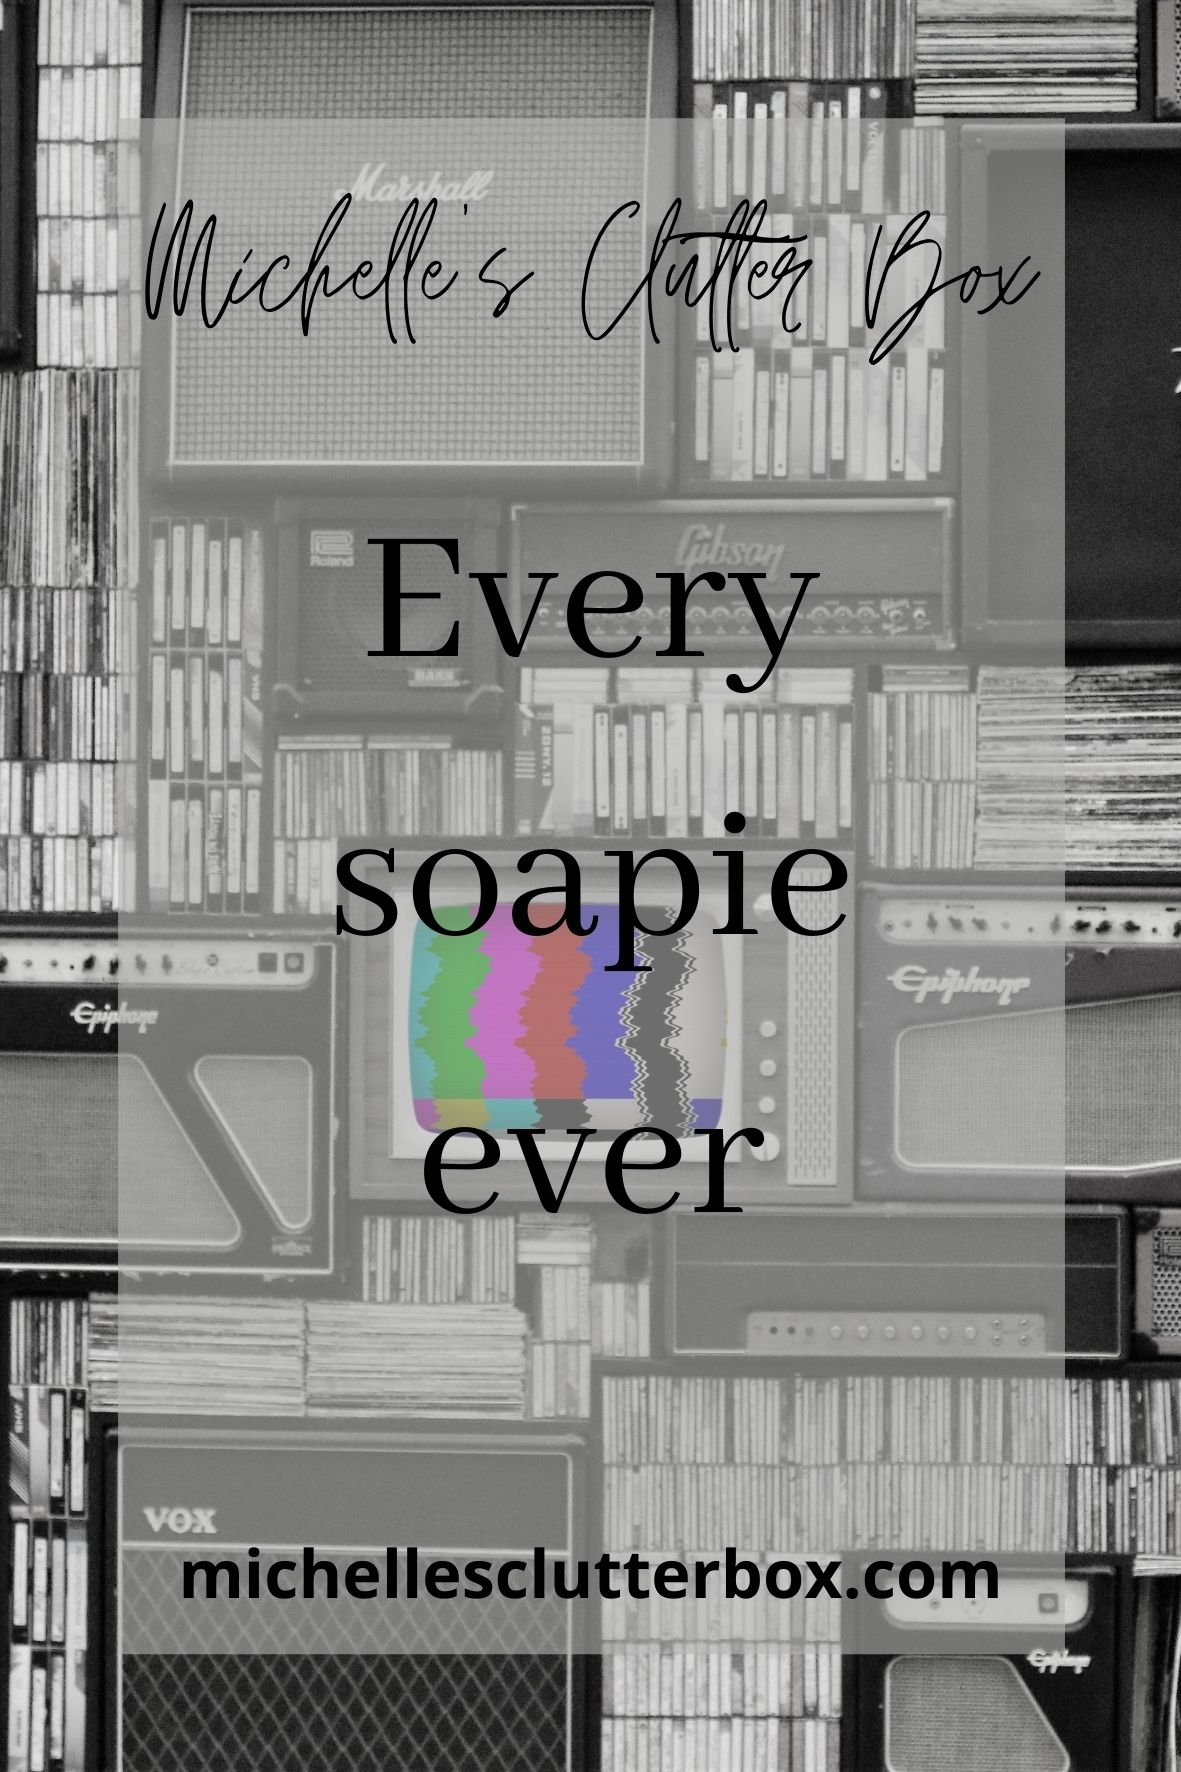 Every soapie ever